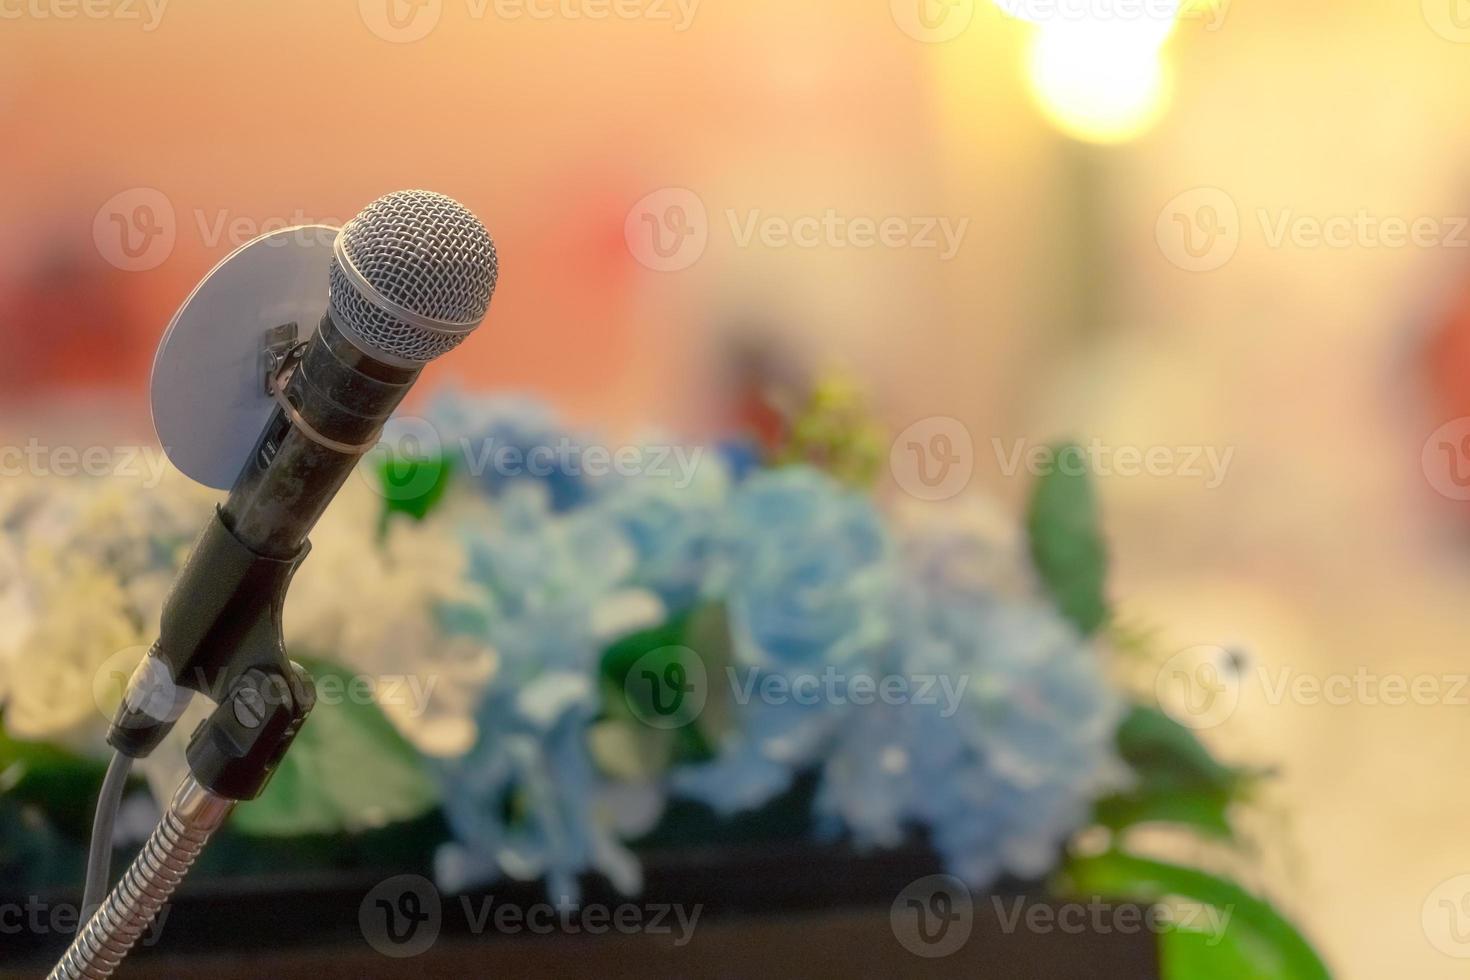 mikrofon på stativ på podiescenen för att tala inför publik eller tal i konferenssalen. mikrofon för högtalare på evenemangsscenen. möte och presentation i seminarierummet. mikrofon för att prata med publiken. foto